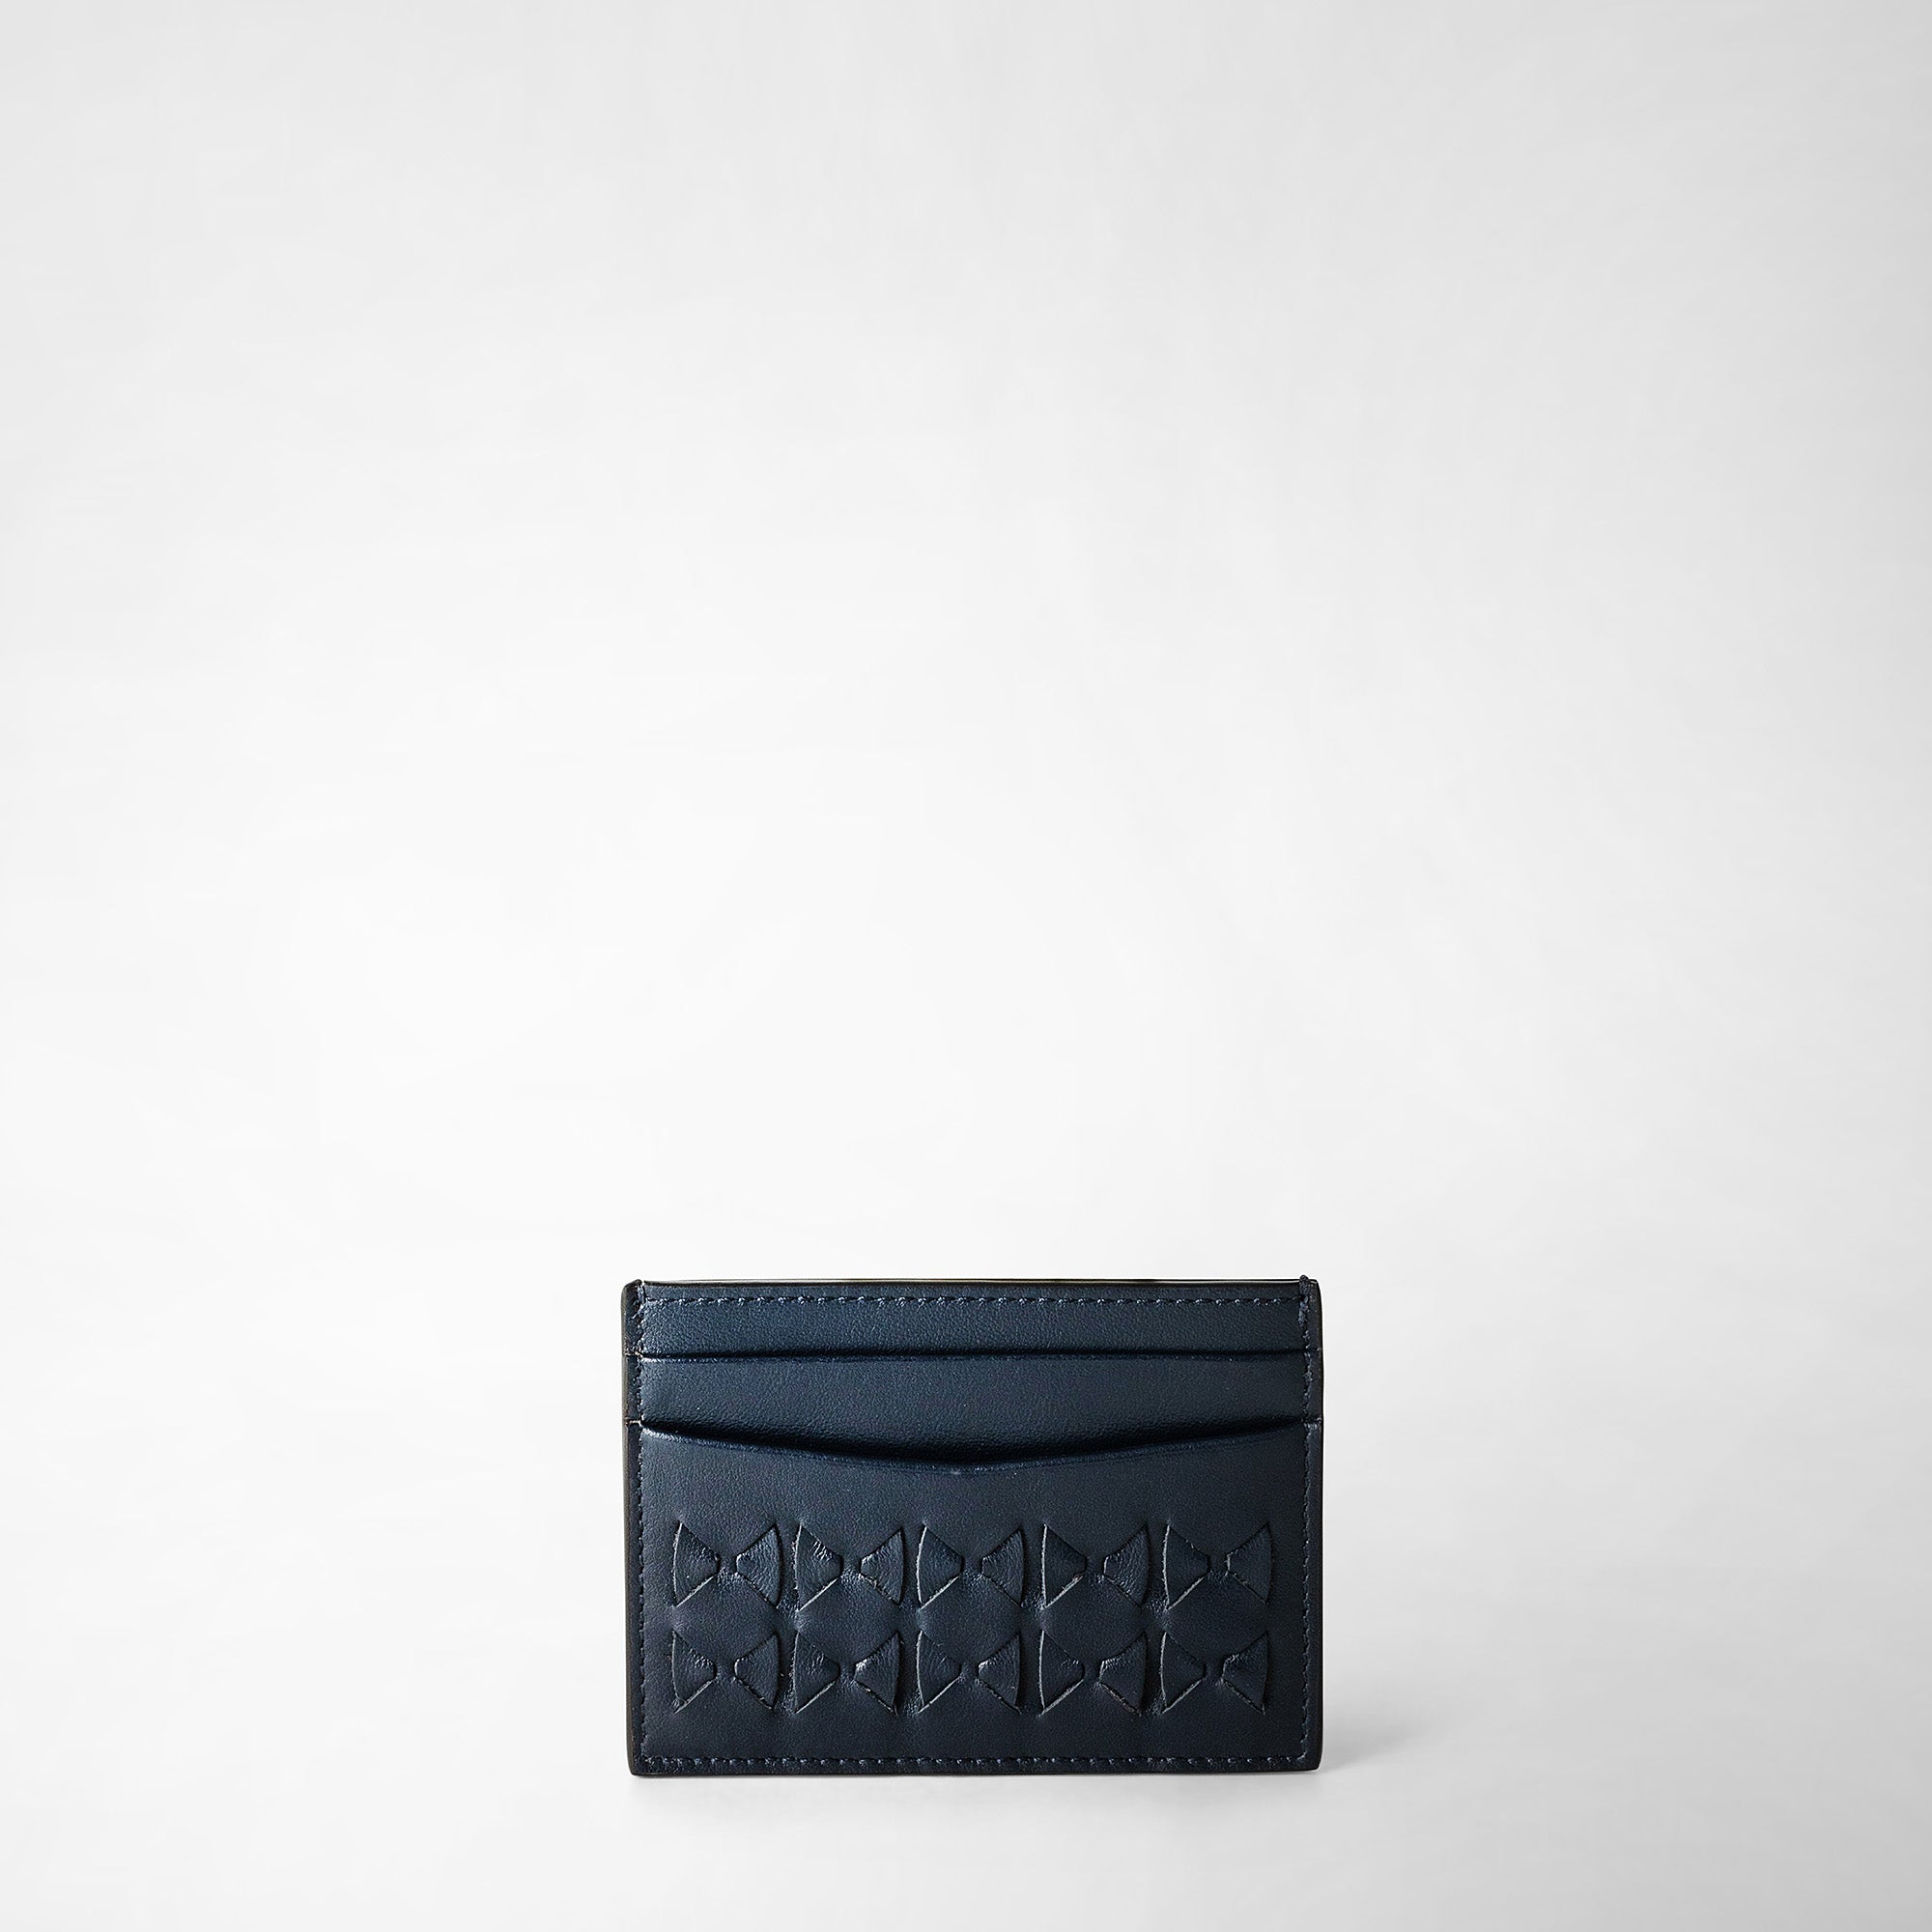 Louis Vuitton Double Card Holder, Black